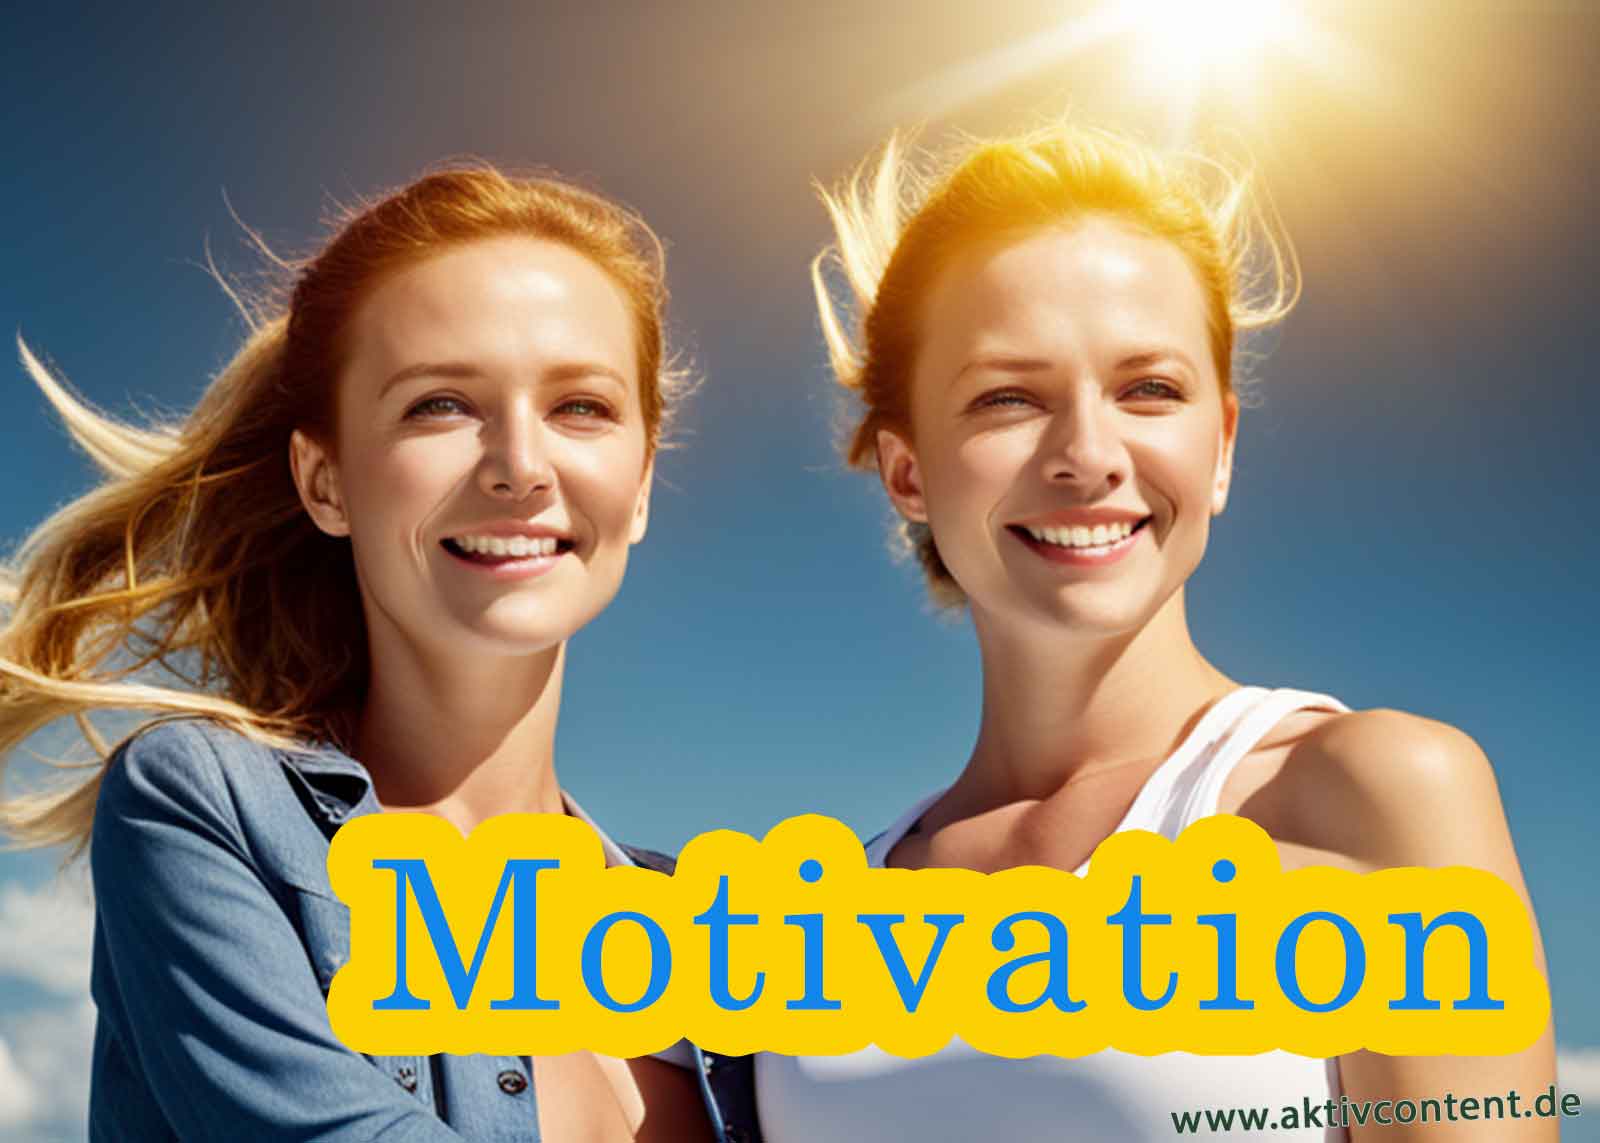 Motivationscoach - 10 Tipps Holen Sie das Beste aus Ihrem Netzwerk heraus! Lernen Sie, wie Sie sich motivieren und disziplinieren können, um Ihr Netzwerk kontinuierlich zu vergrößern und neue Türen zu öffnen